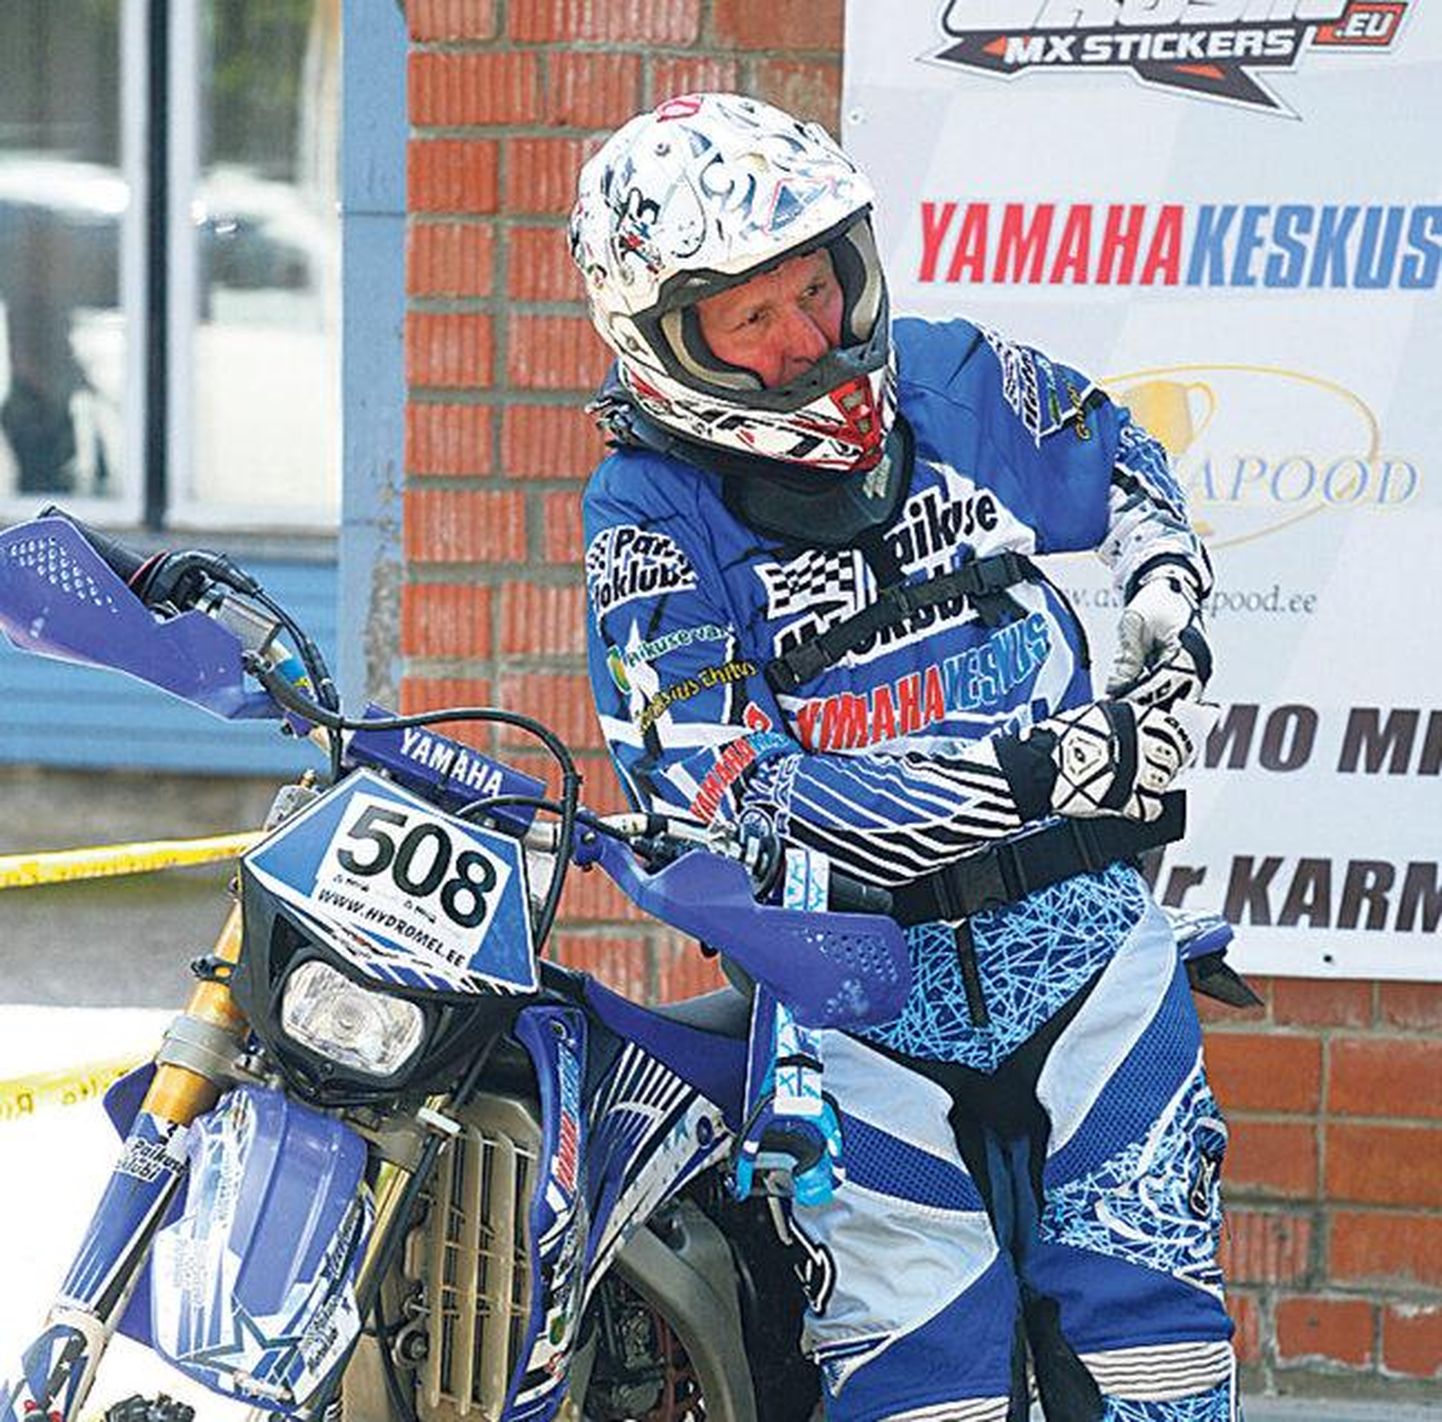 Paikuse motoklubi enduuroäss Toivo Nikopensius ei andnud kodusel võidukihutamisel konkurentidele sõnaõigust.